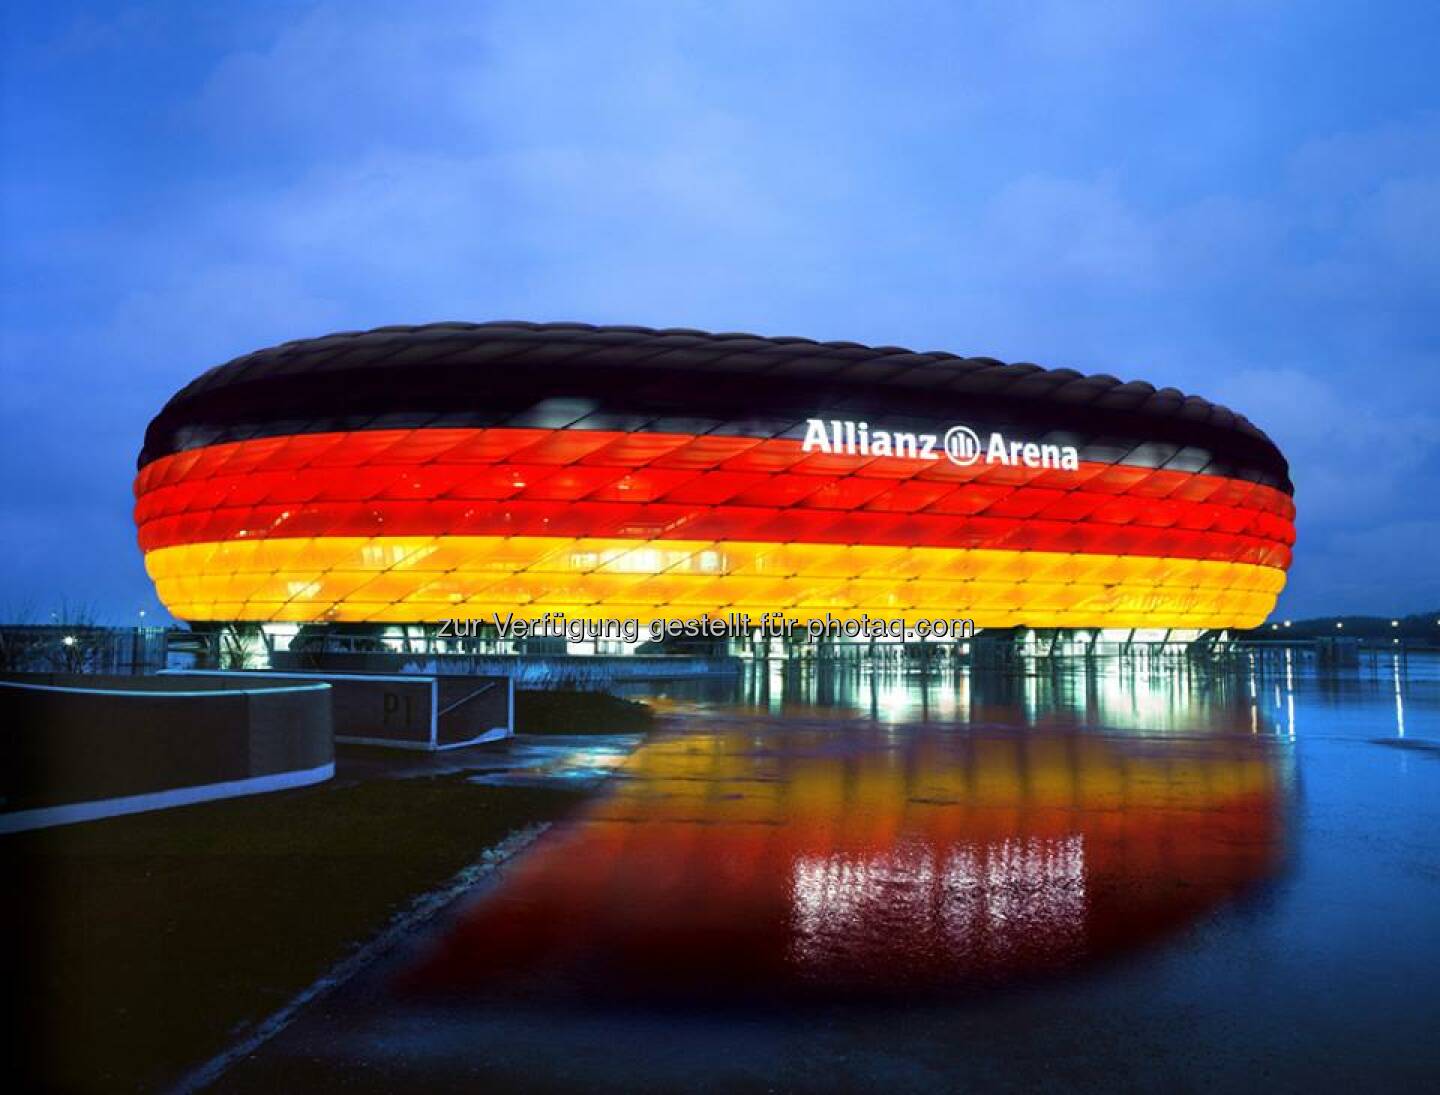 Deutschland, Fusball, Allianz Arena, Source: http://facebook.com/allianzdeutschland